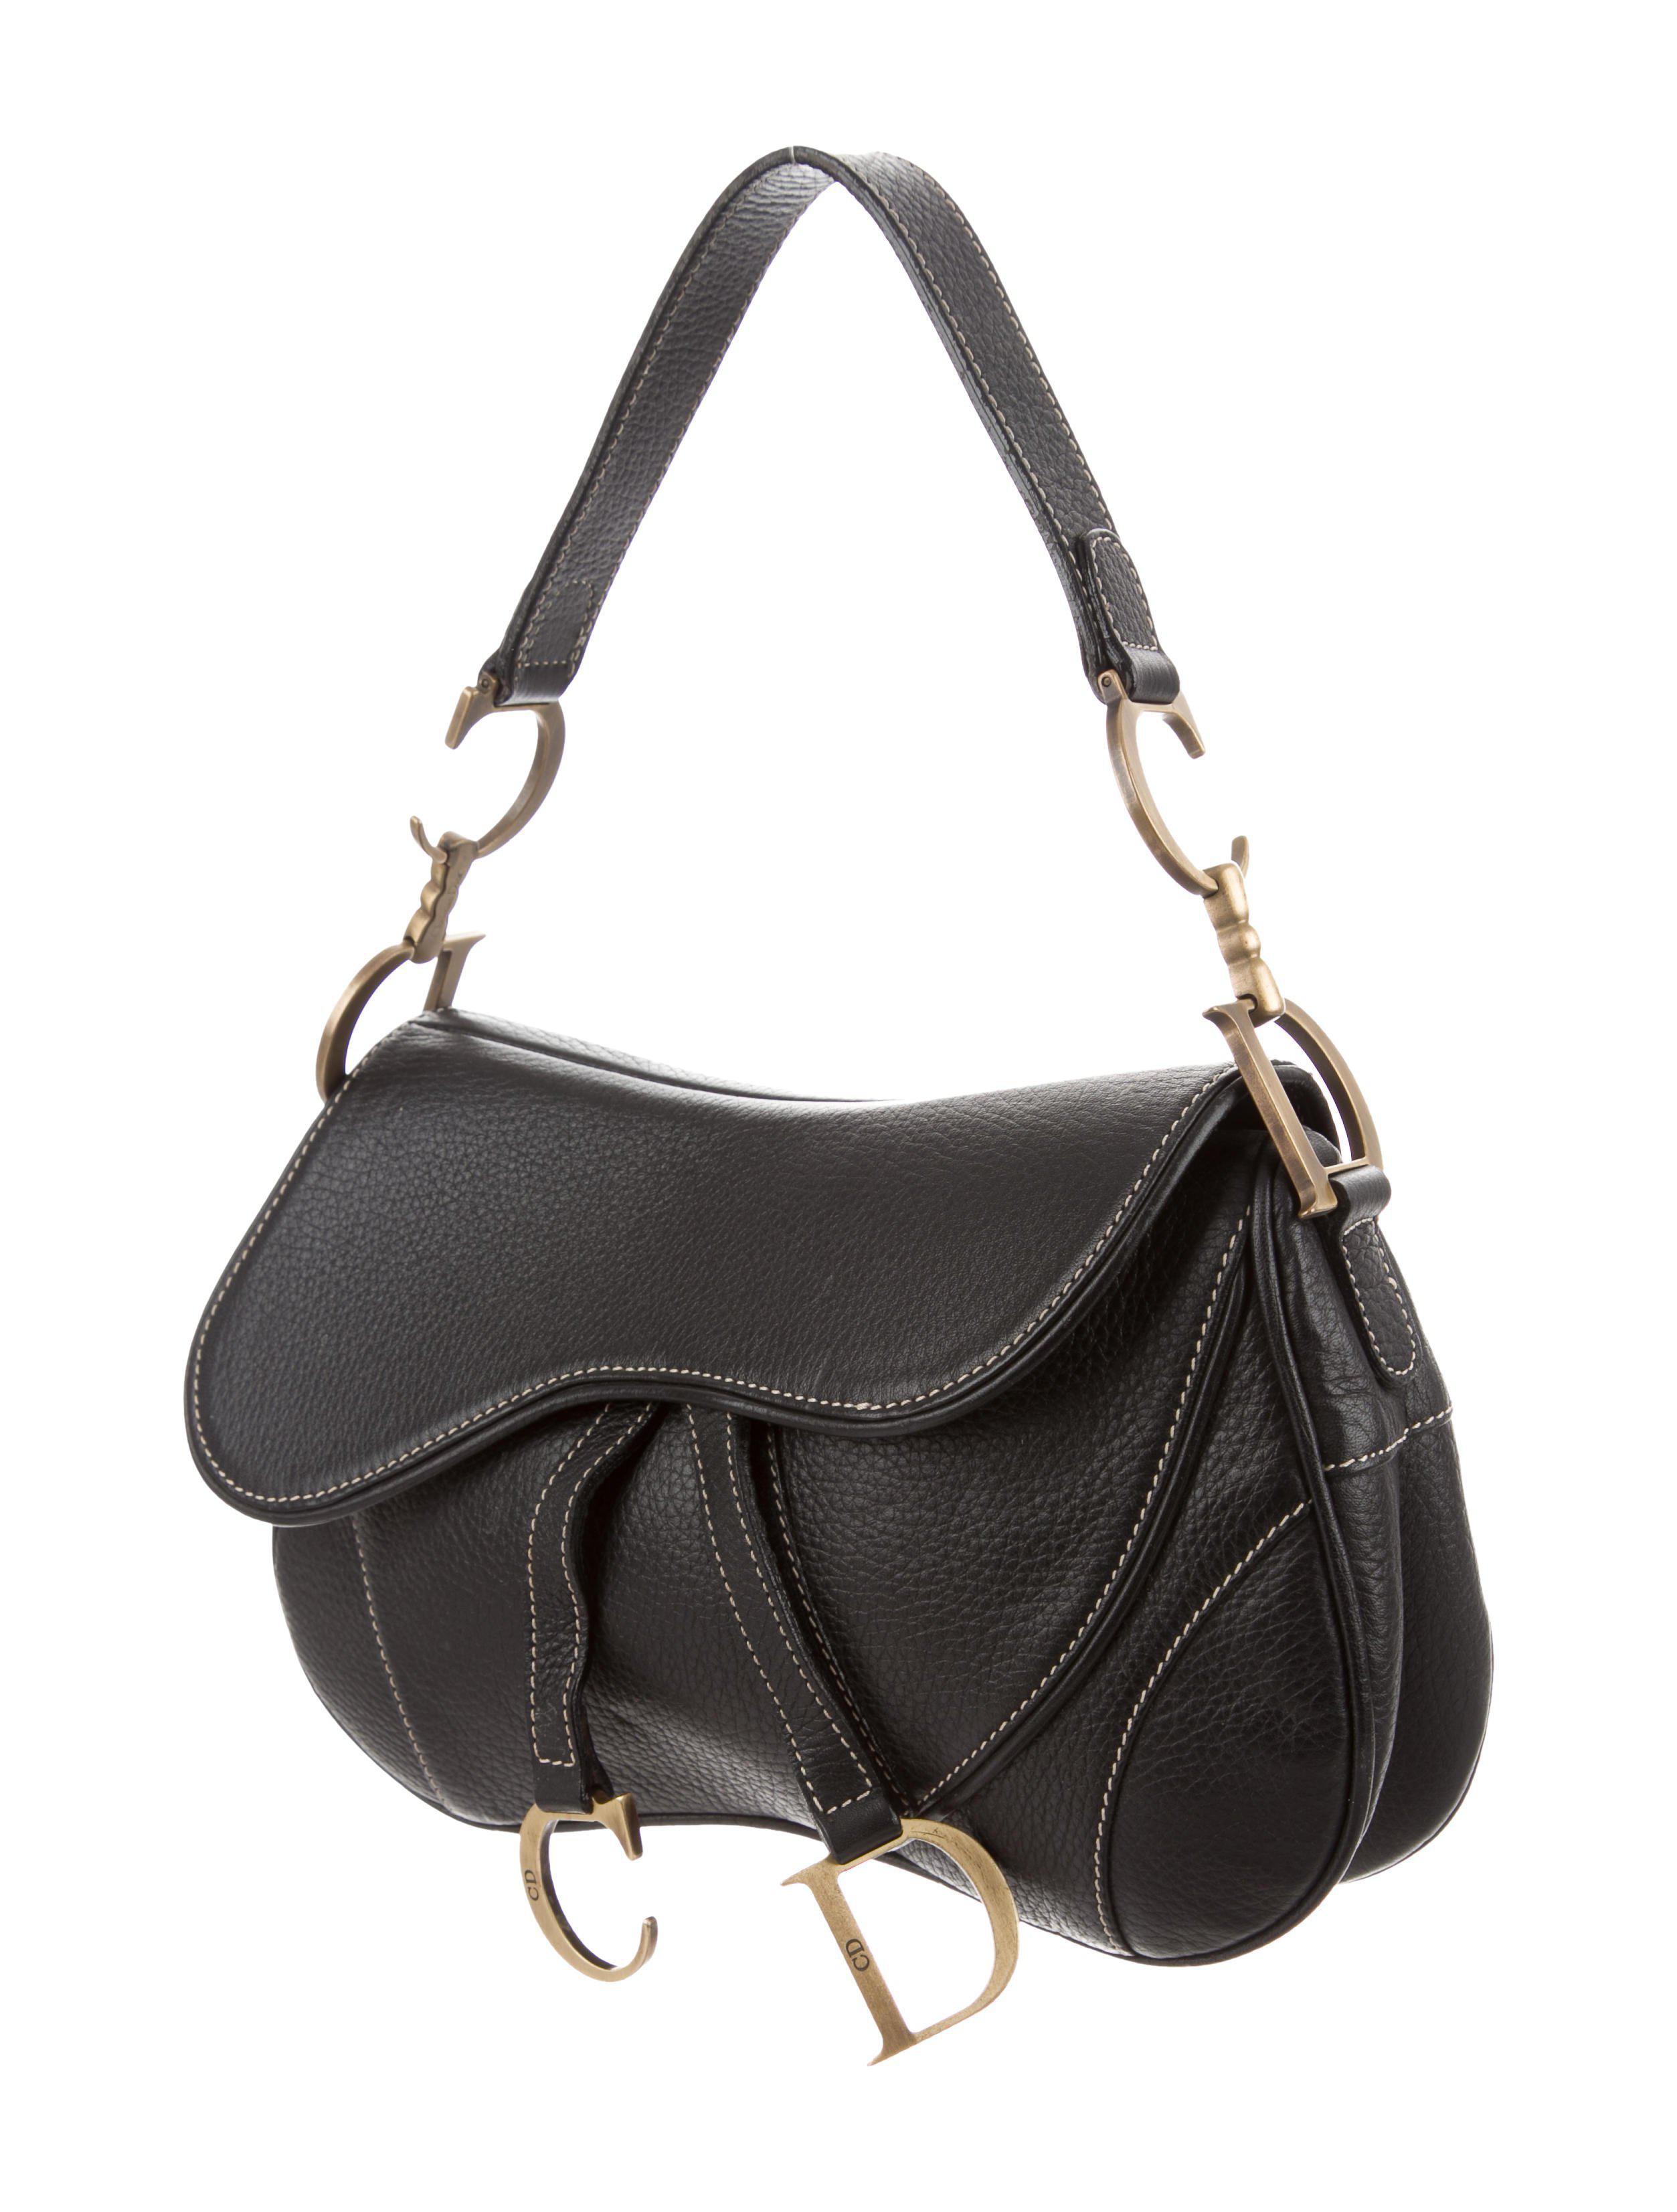 Dior Saddle Bag Black And Gold | semashow.com